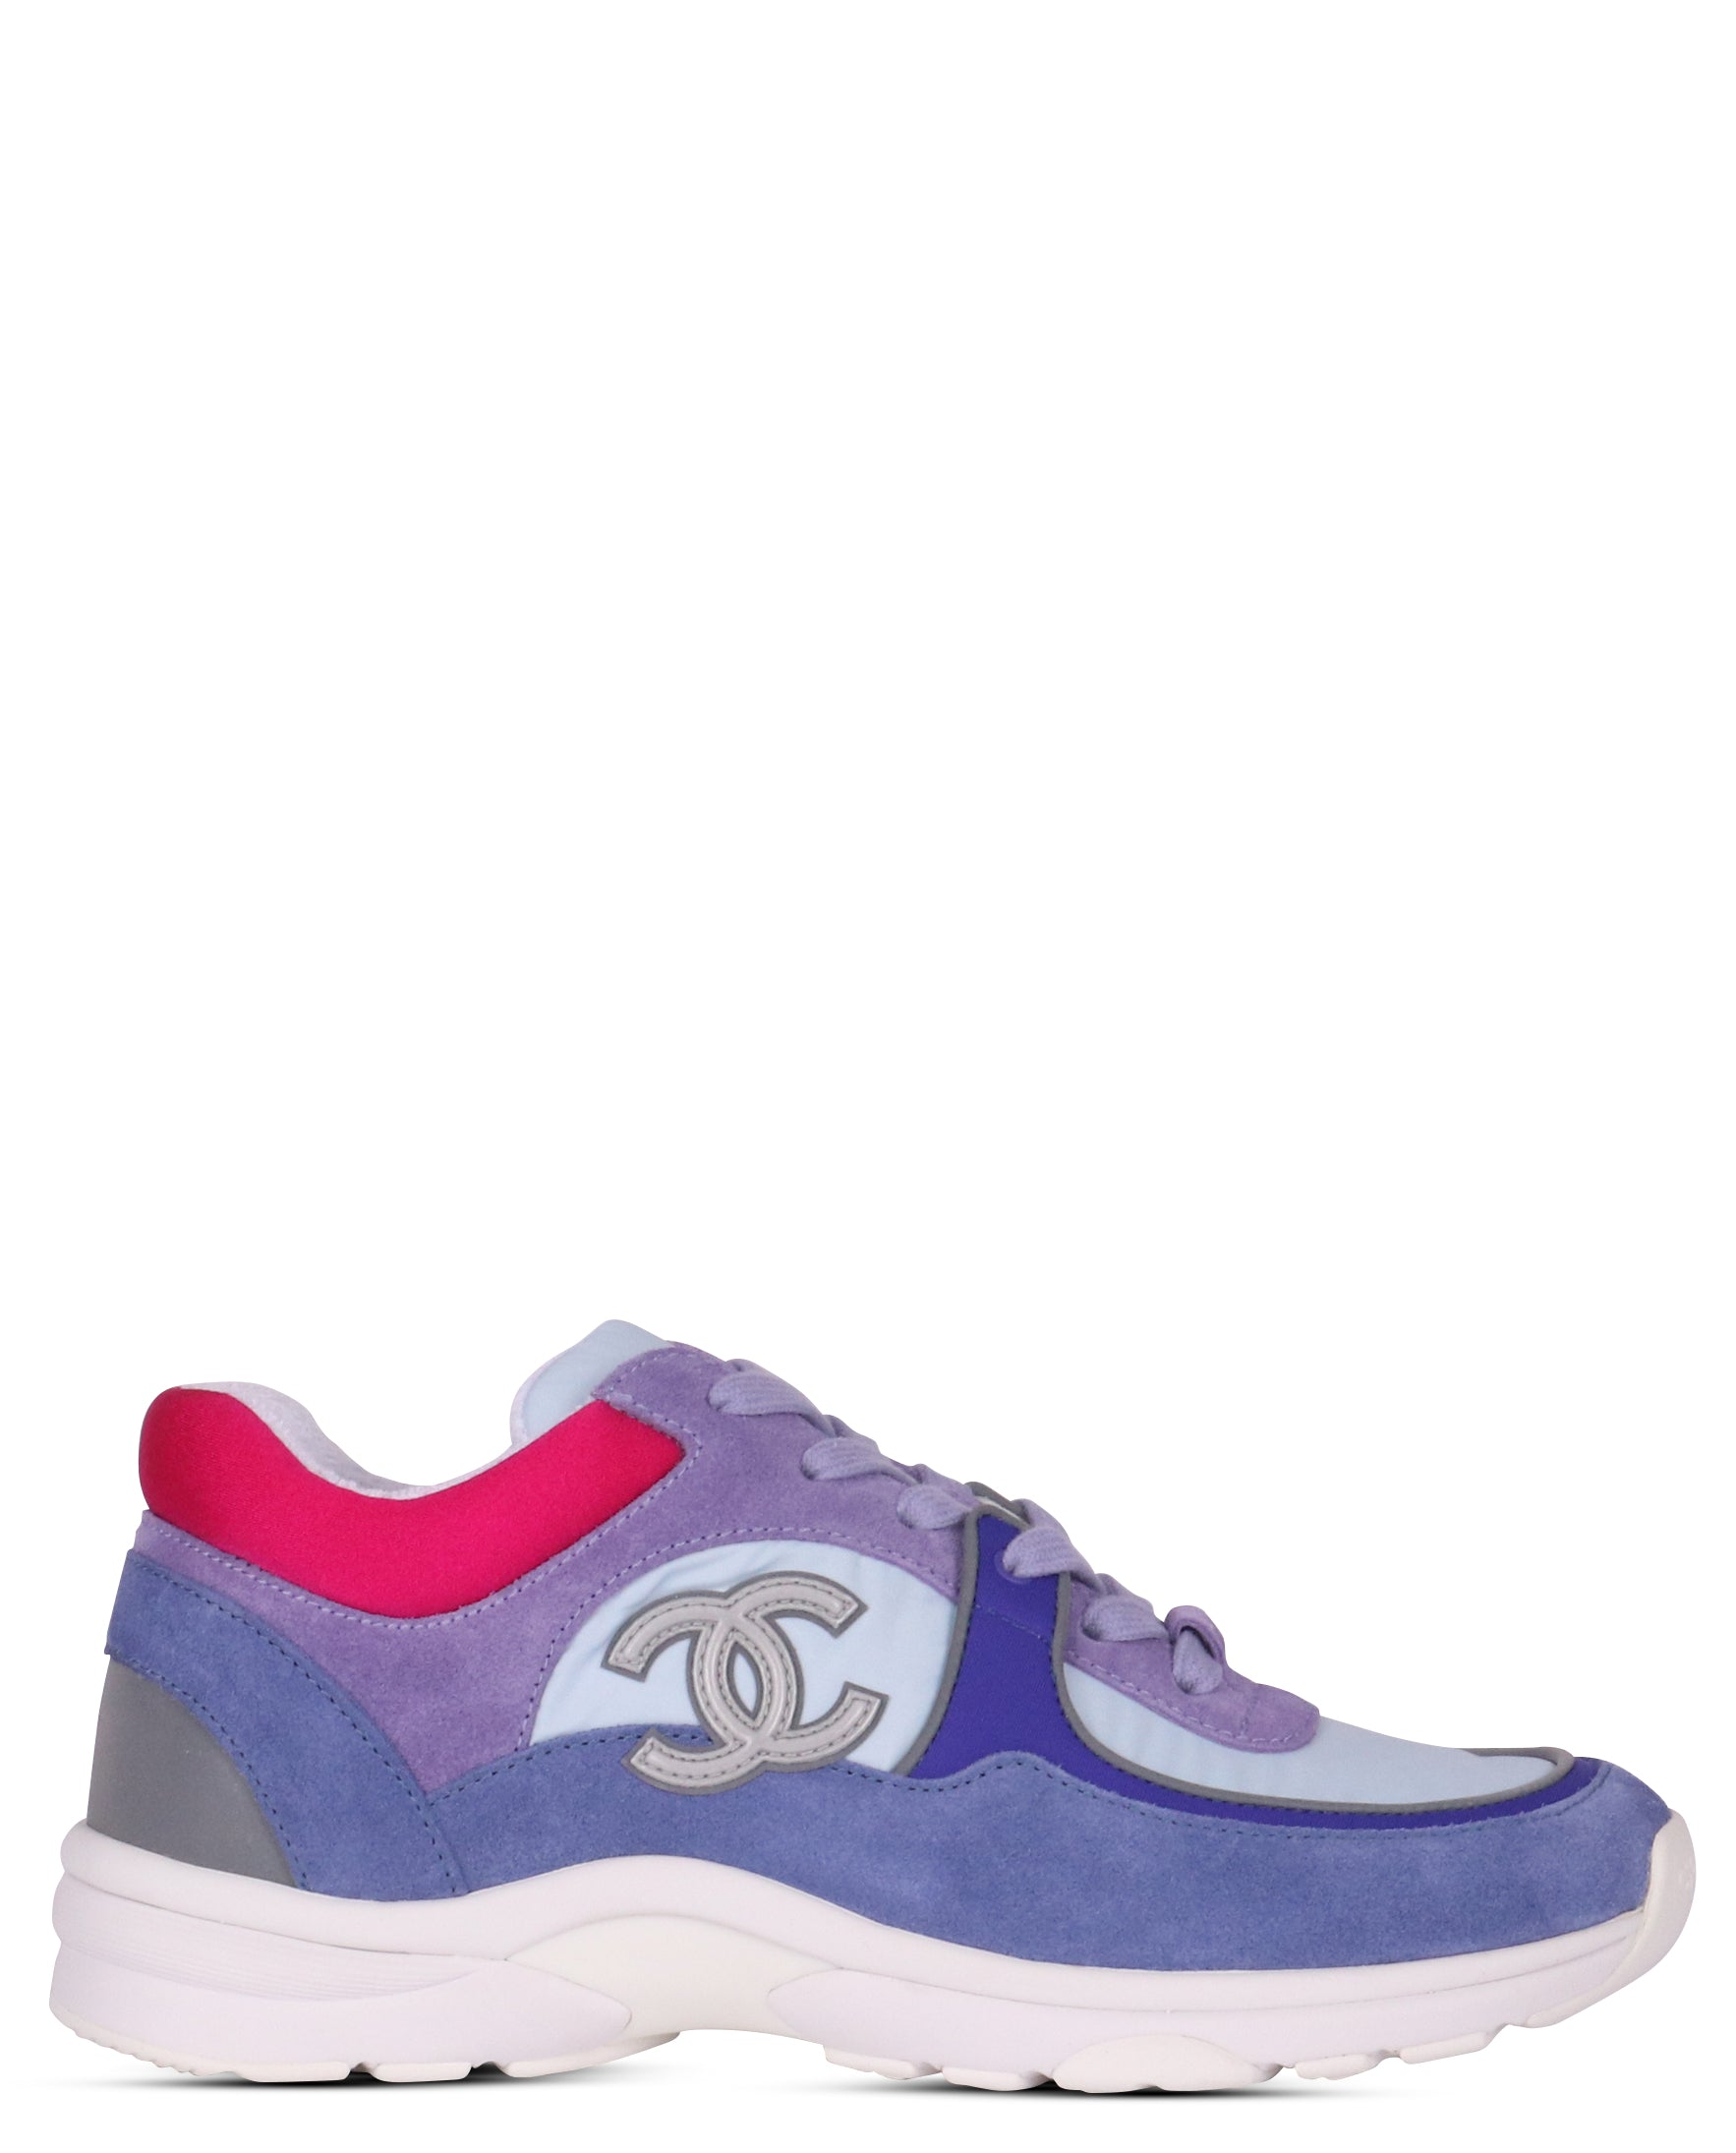 CHANEL Nylon Lambskin Suede Calfskin CC Sneakers 37 Green Purple Pink  886295